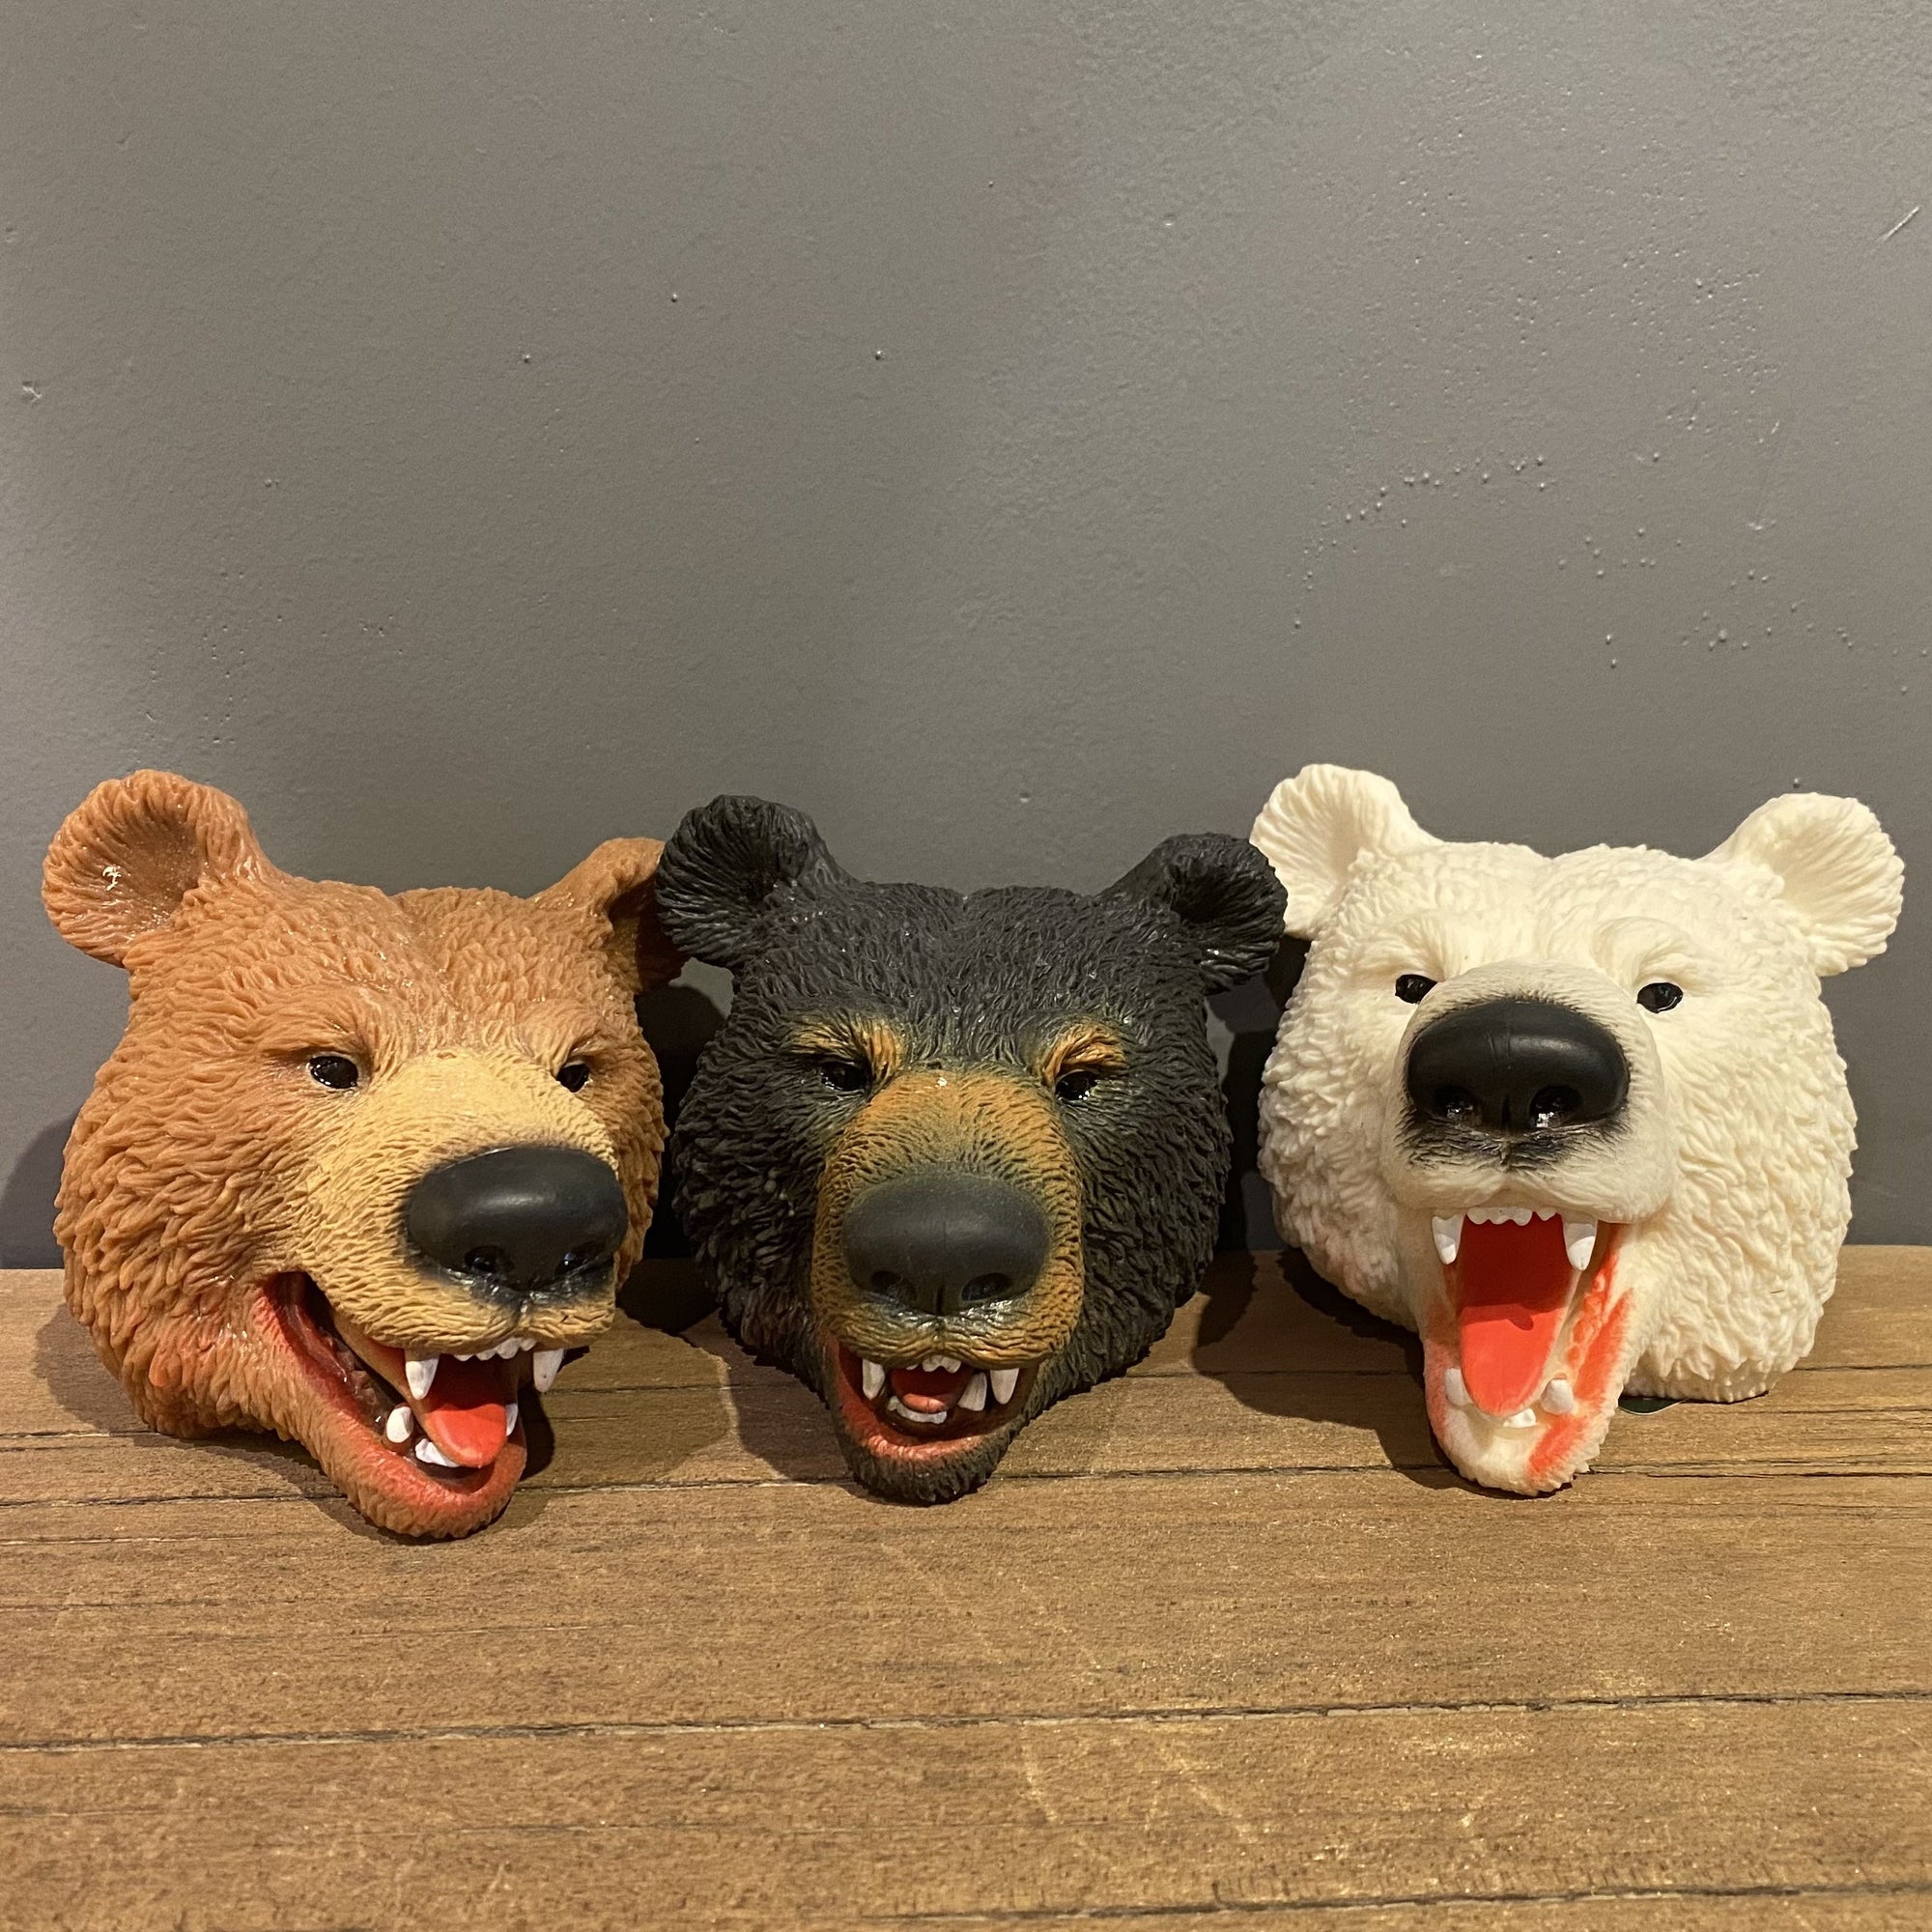 Bear Hand Puppet -assorted 3yrs+